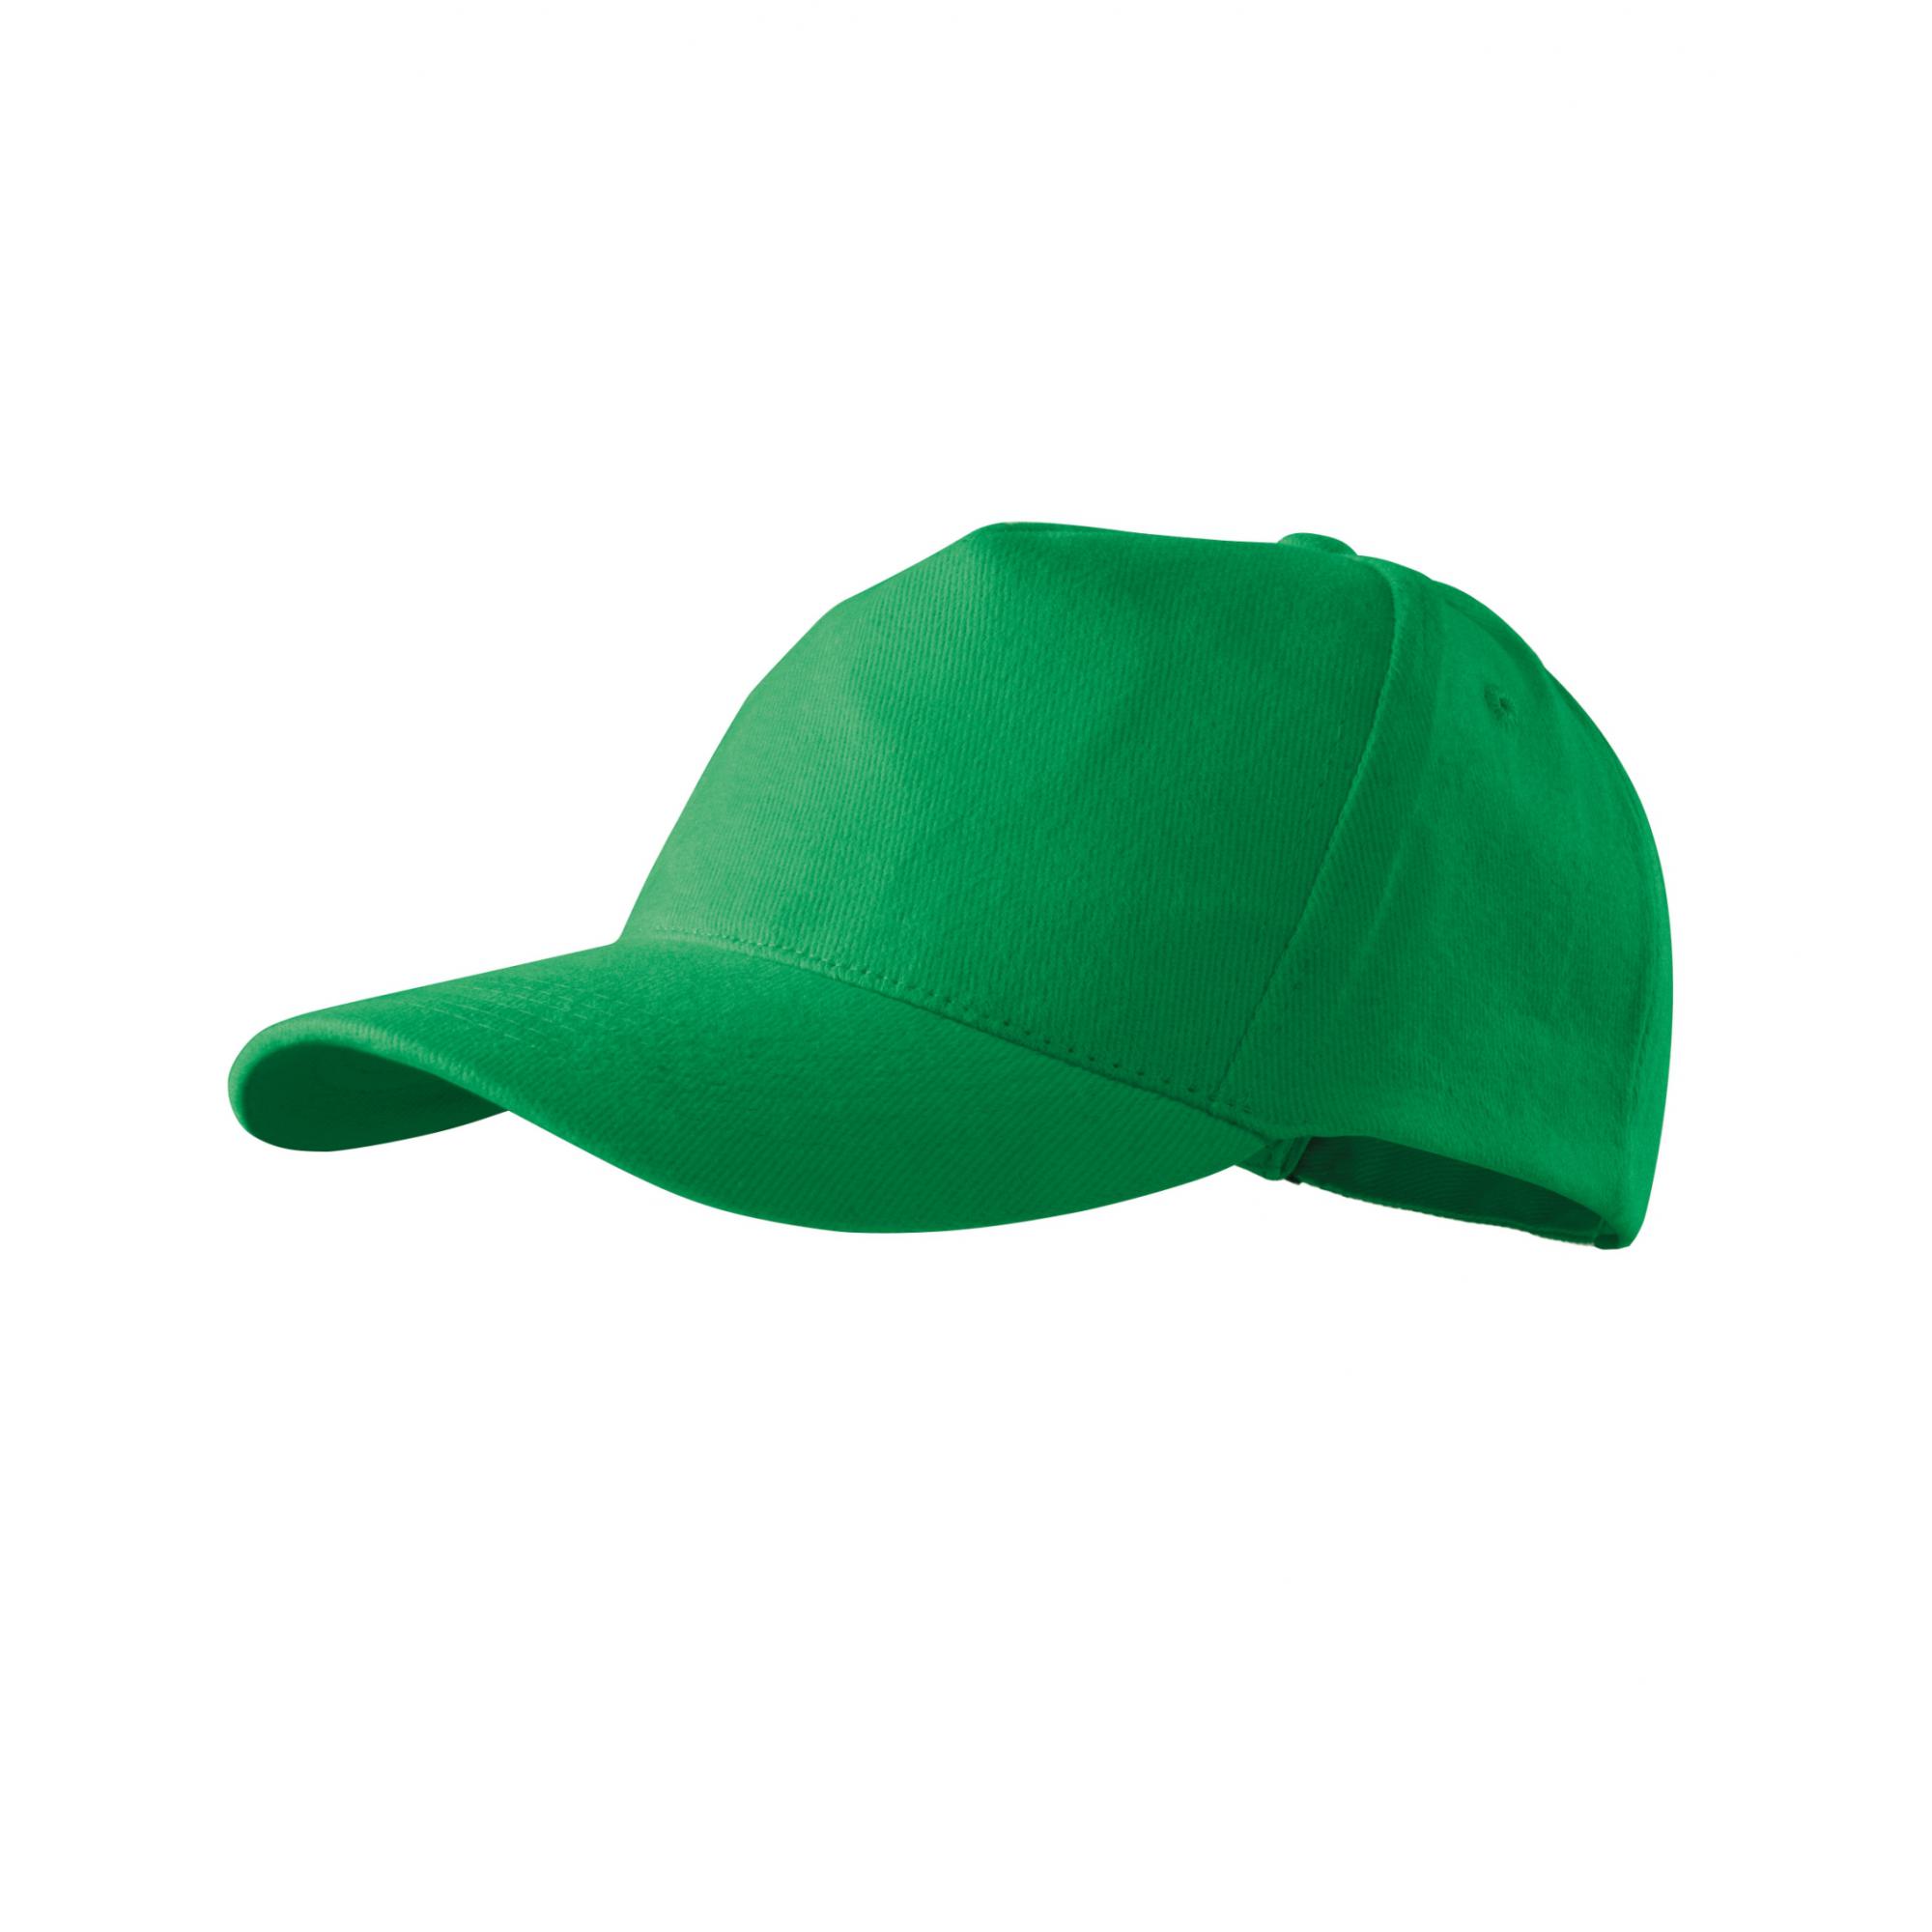 Şapcă unisex 5P 307 Verde mediu Marime universala